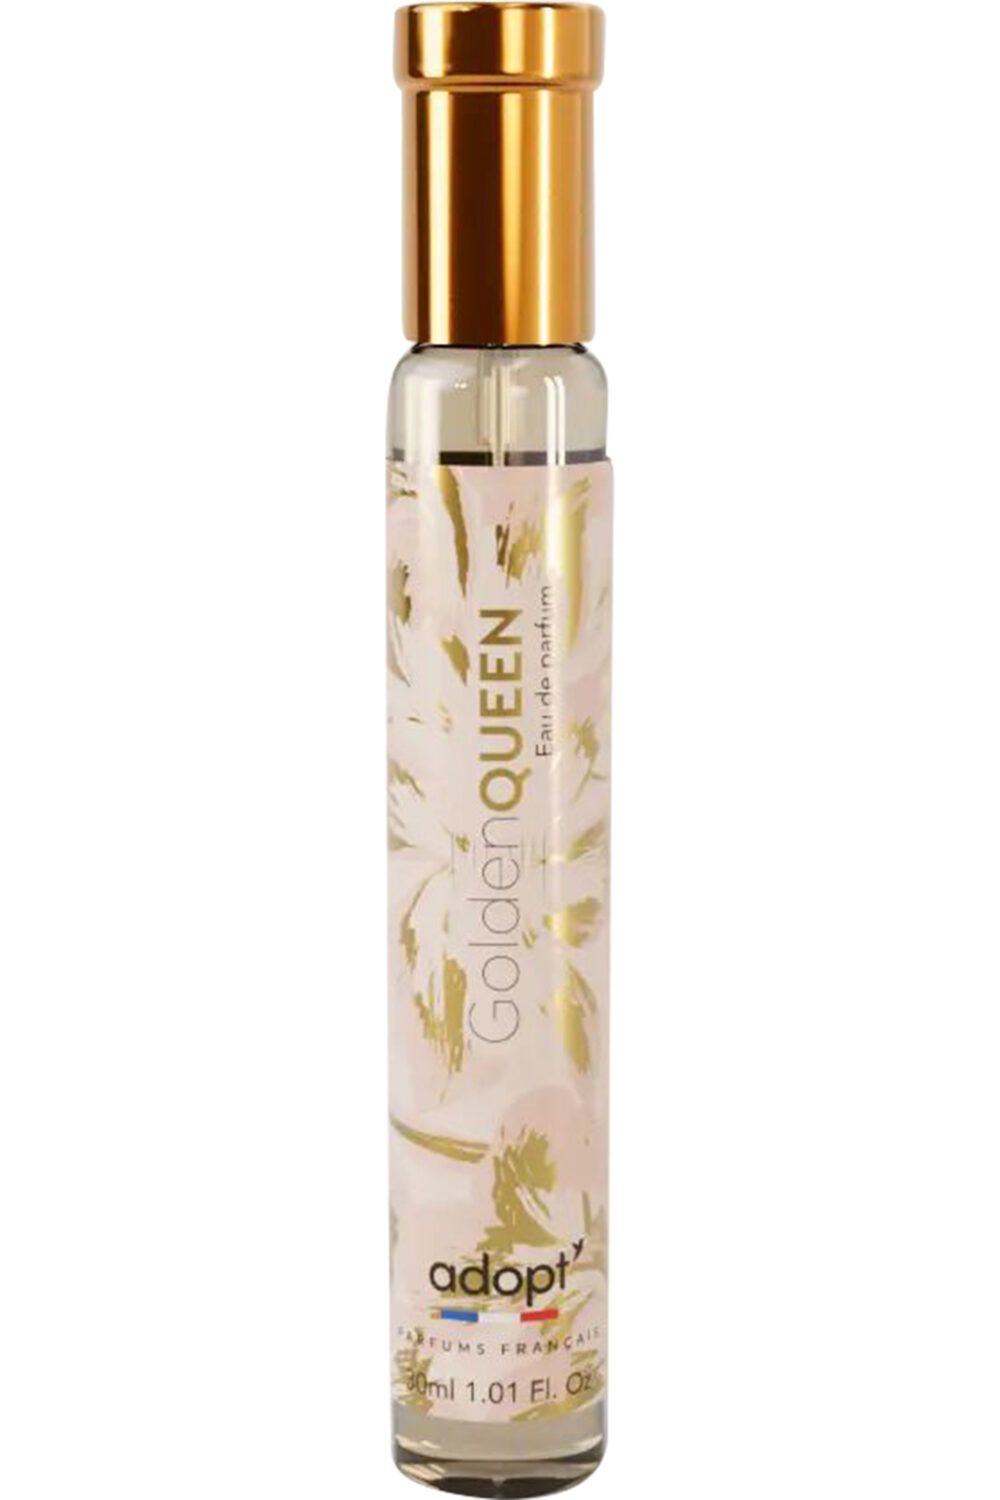 Adopt Parfums - Parfum Golden queen